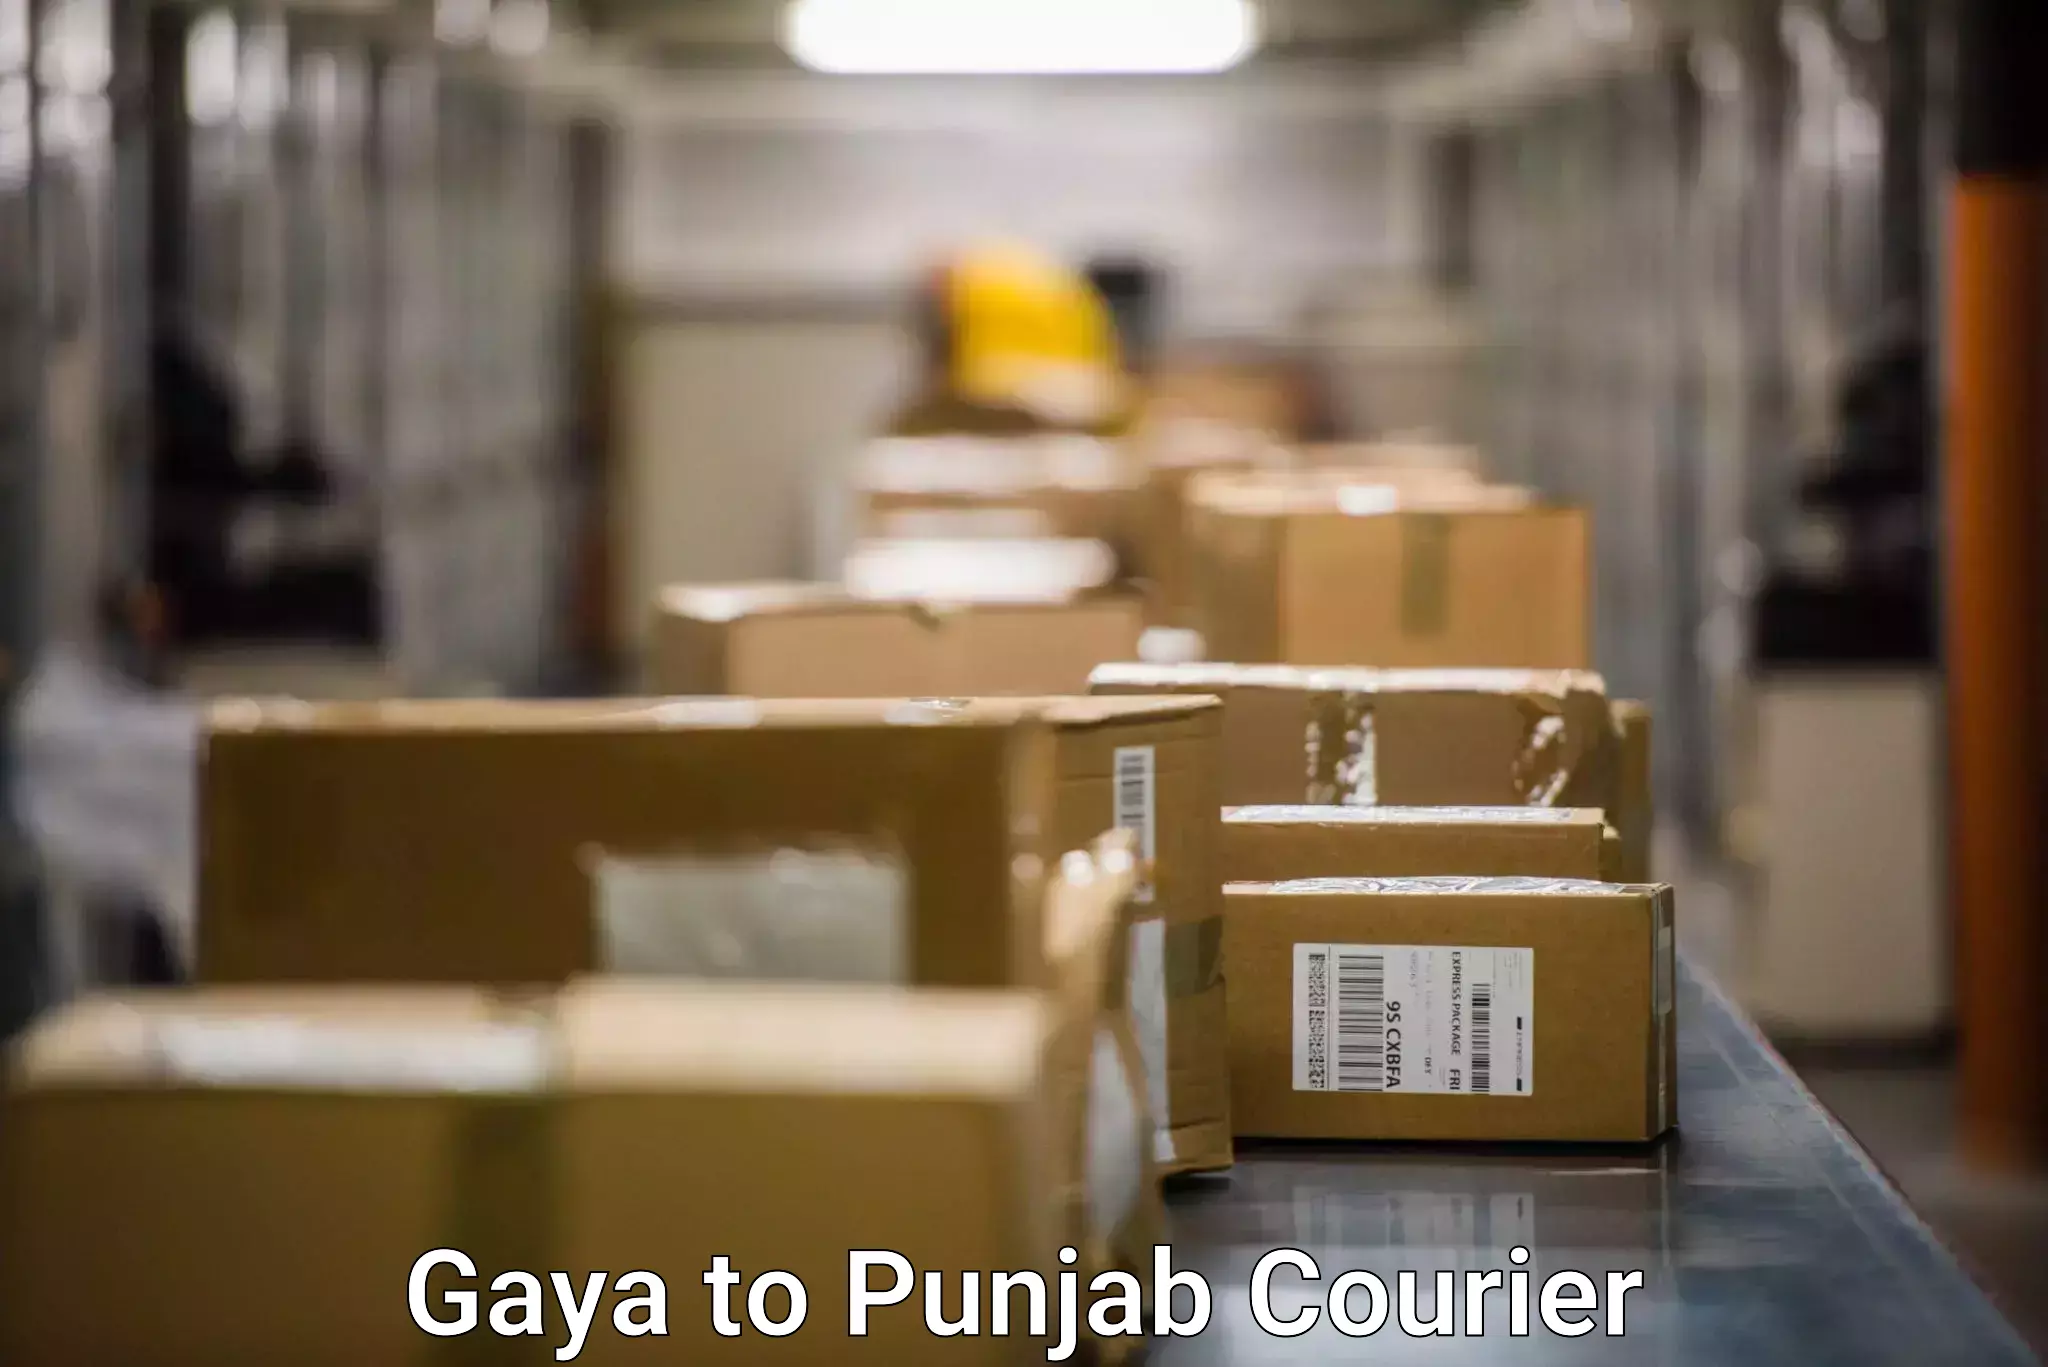 Efficient parcel service Gaya to Sirhind Fatehgarh